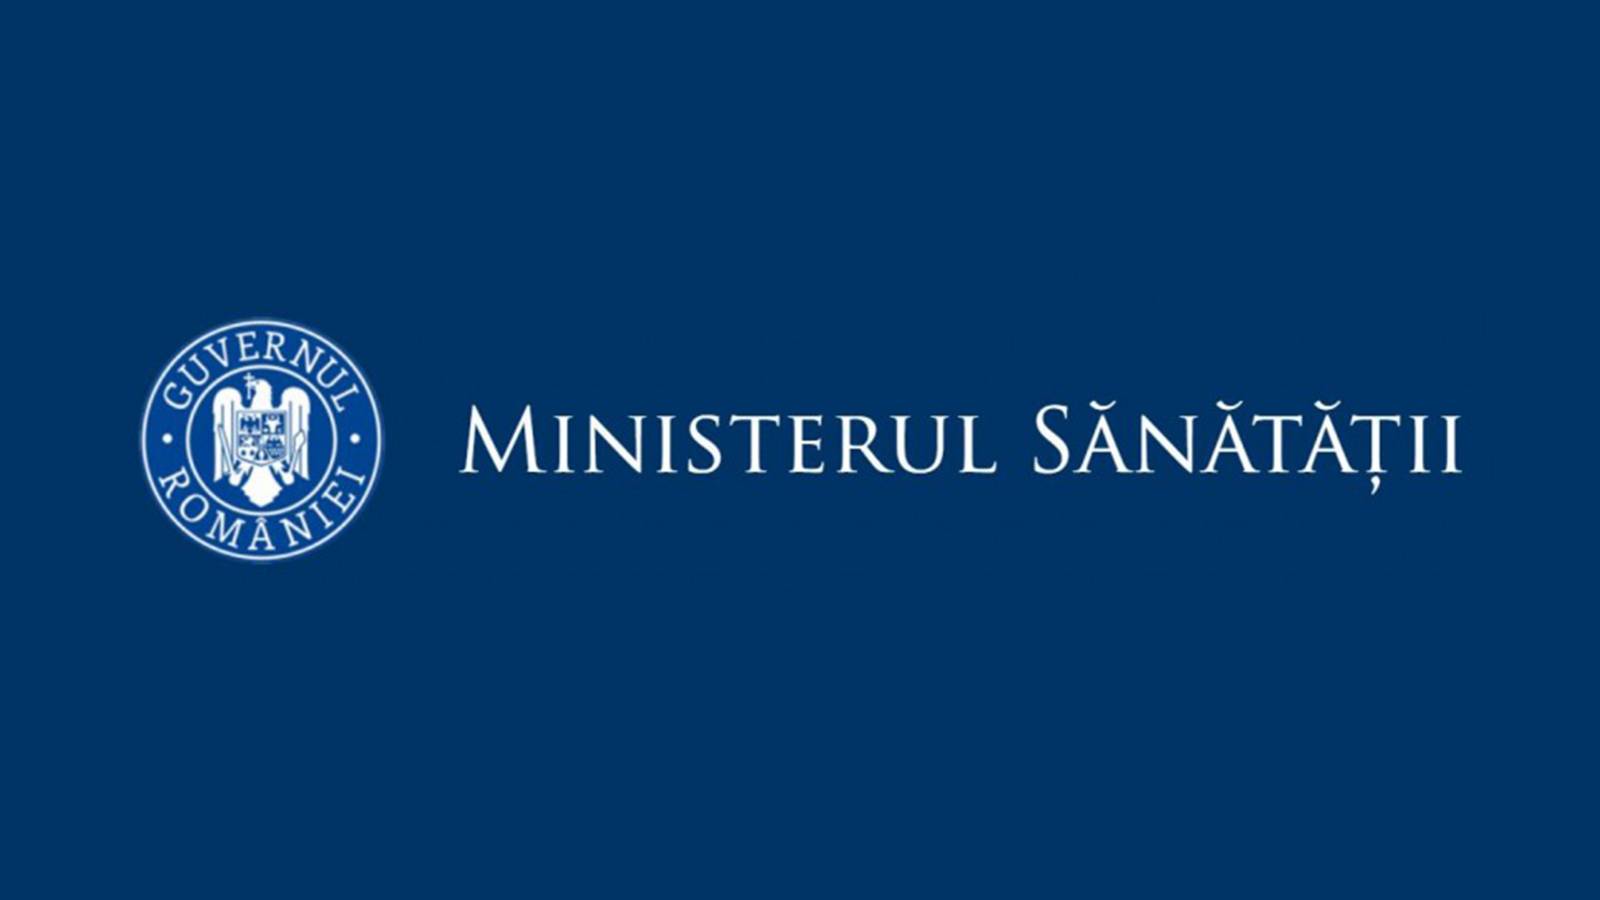 Inzidenzraten des Gesundheitsministeriums Rumänien, 21. Mai 2021